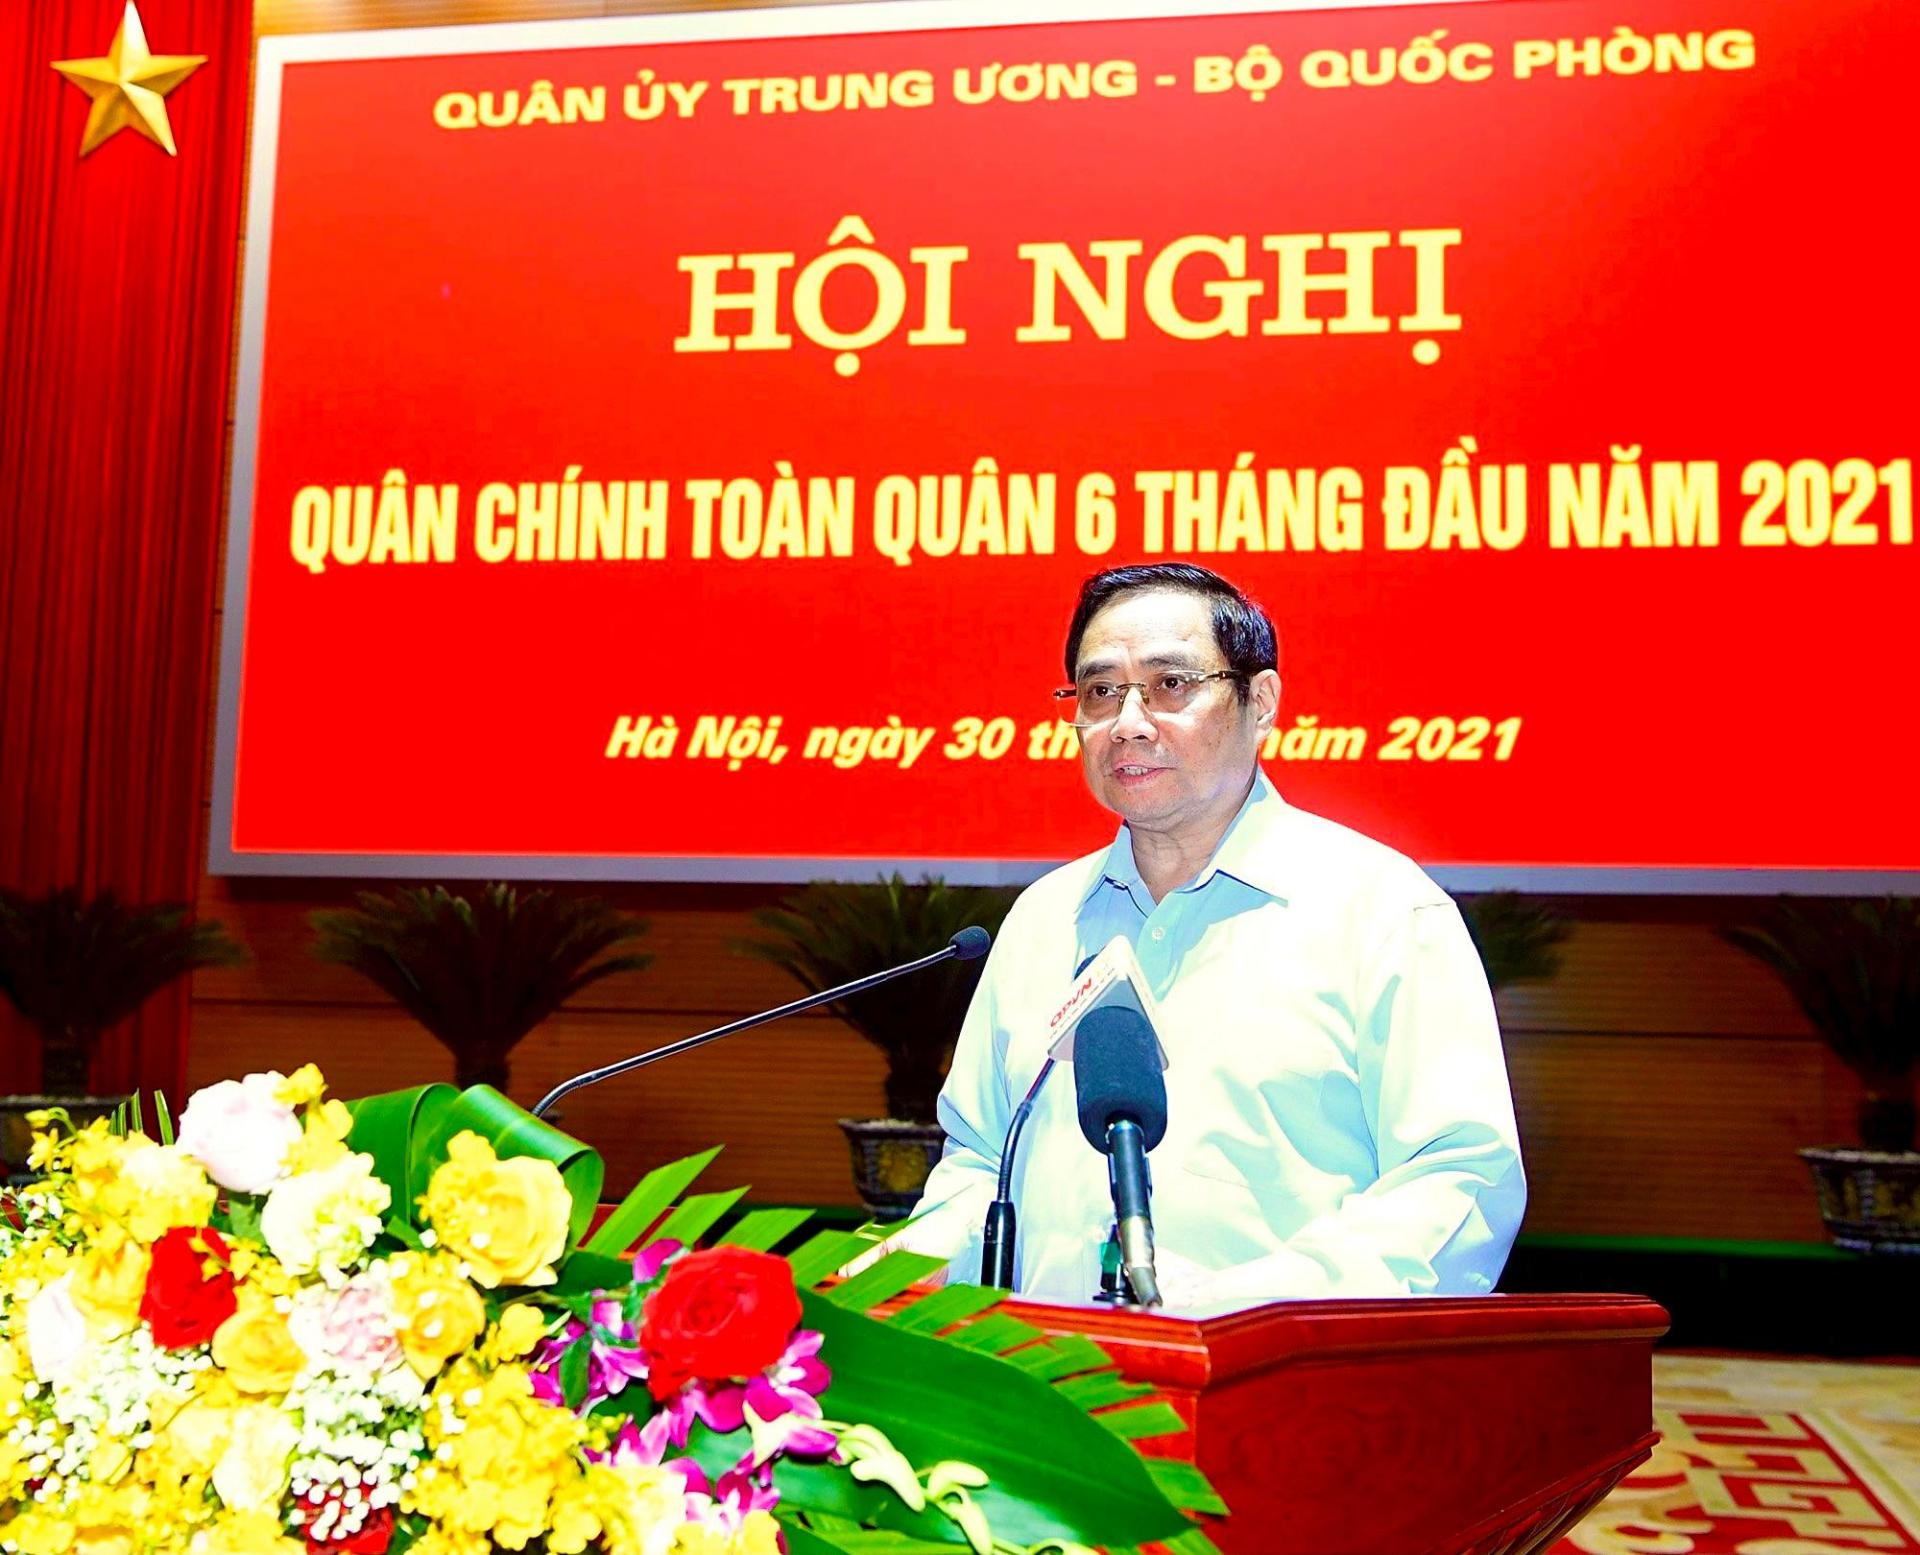 Thủ tướng Chính phủ Phạm Minh Chính: Quân đội nhân dân Việt Nam đã hoàn thành tốt các nhiệm vụ, tạo chuyển biến trên các mặt công tác. 